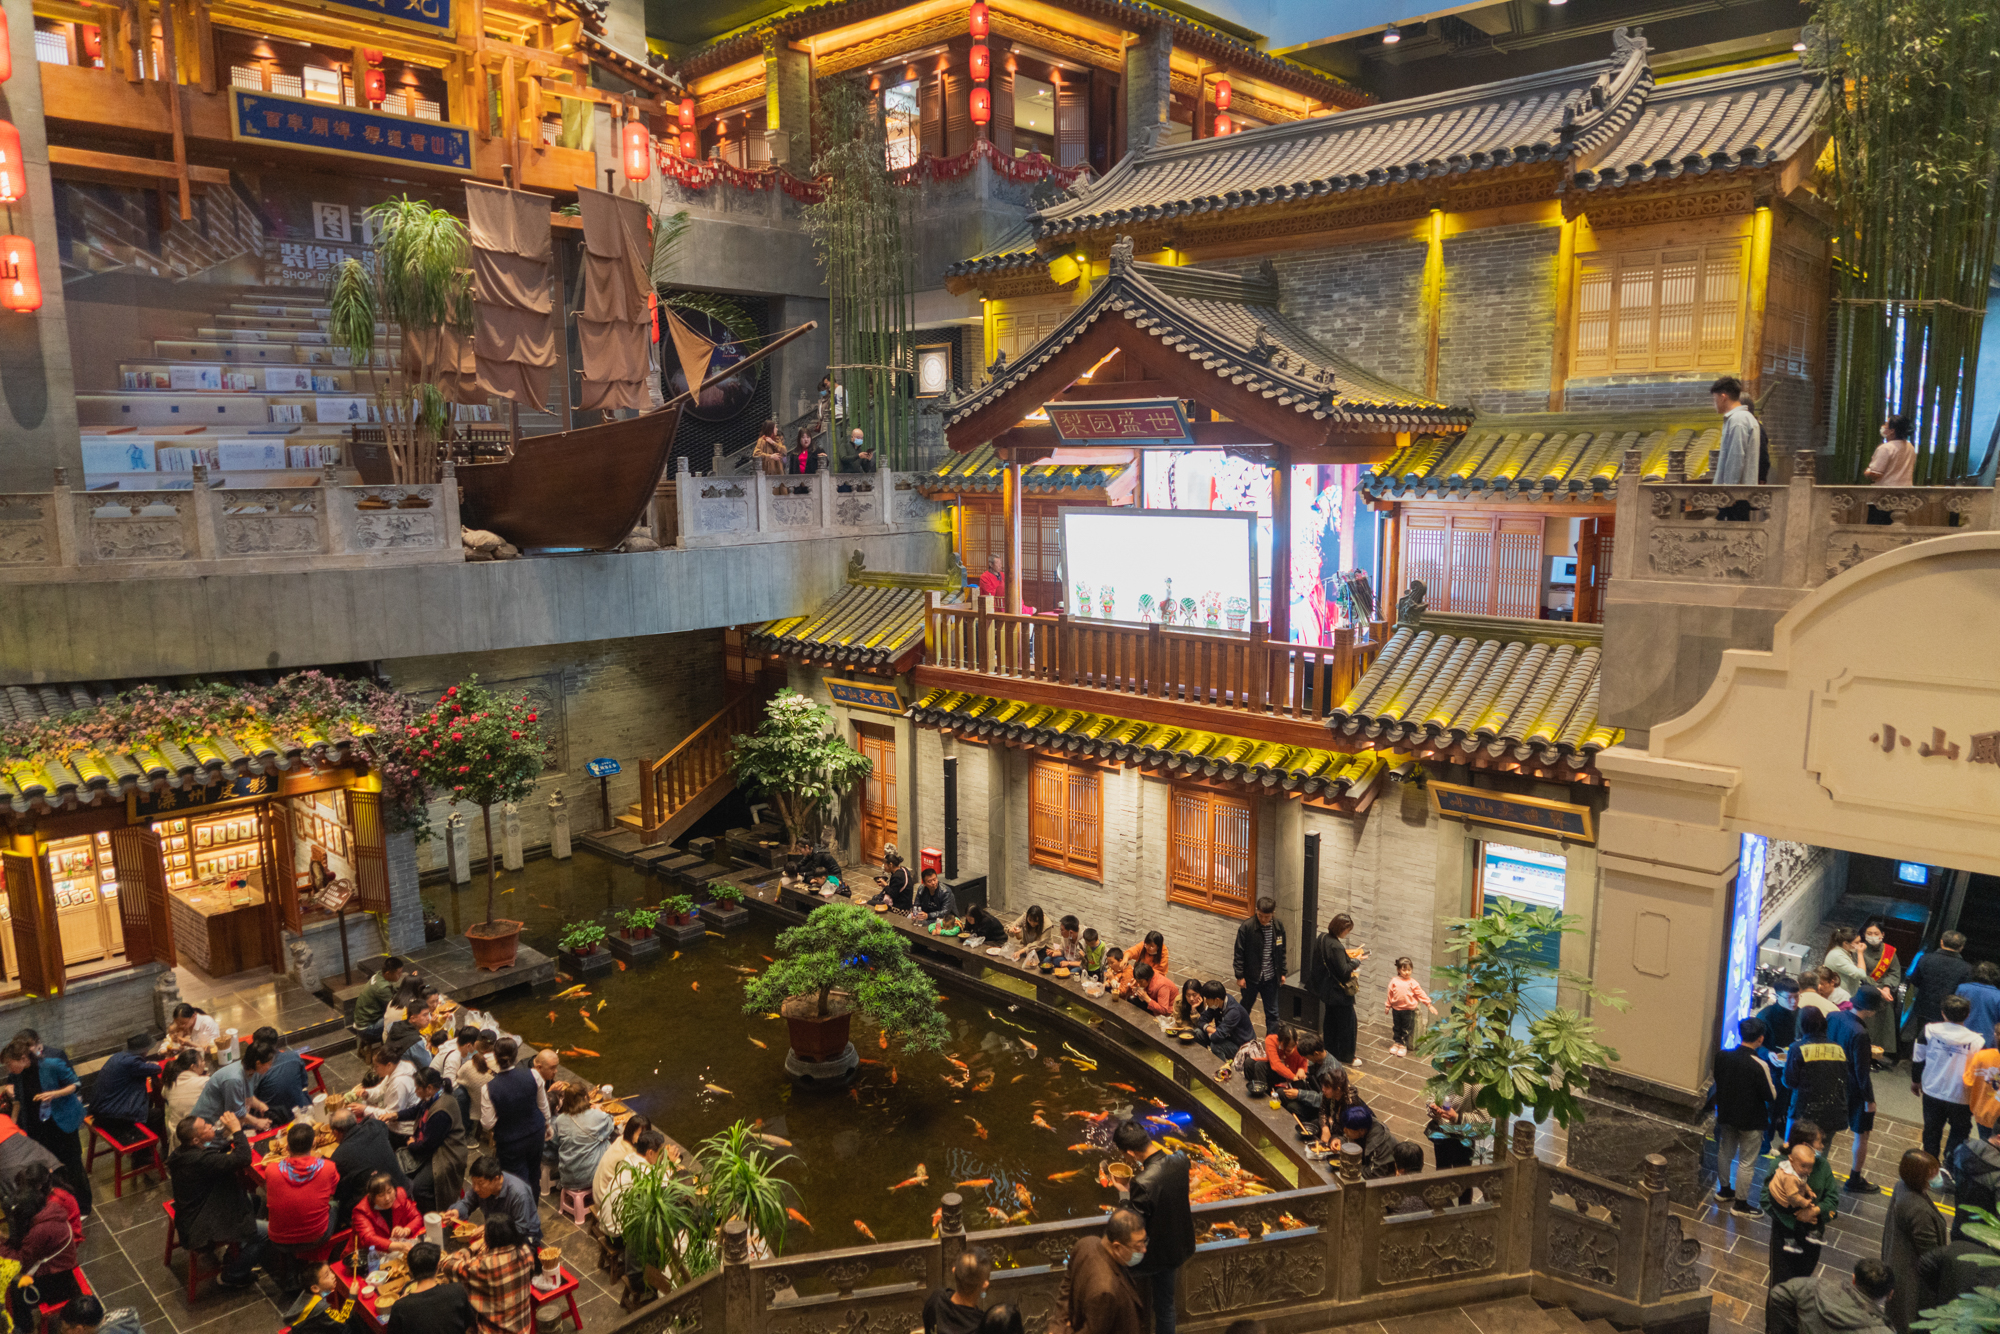 唐山饮食文化博物馆由三街两巷一条河连通,一条概念滦河贯穿其中,两条